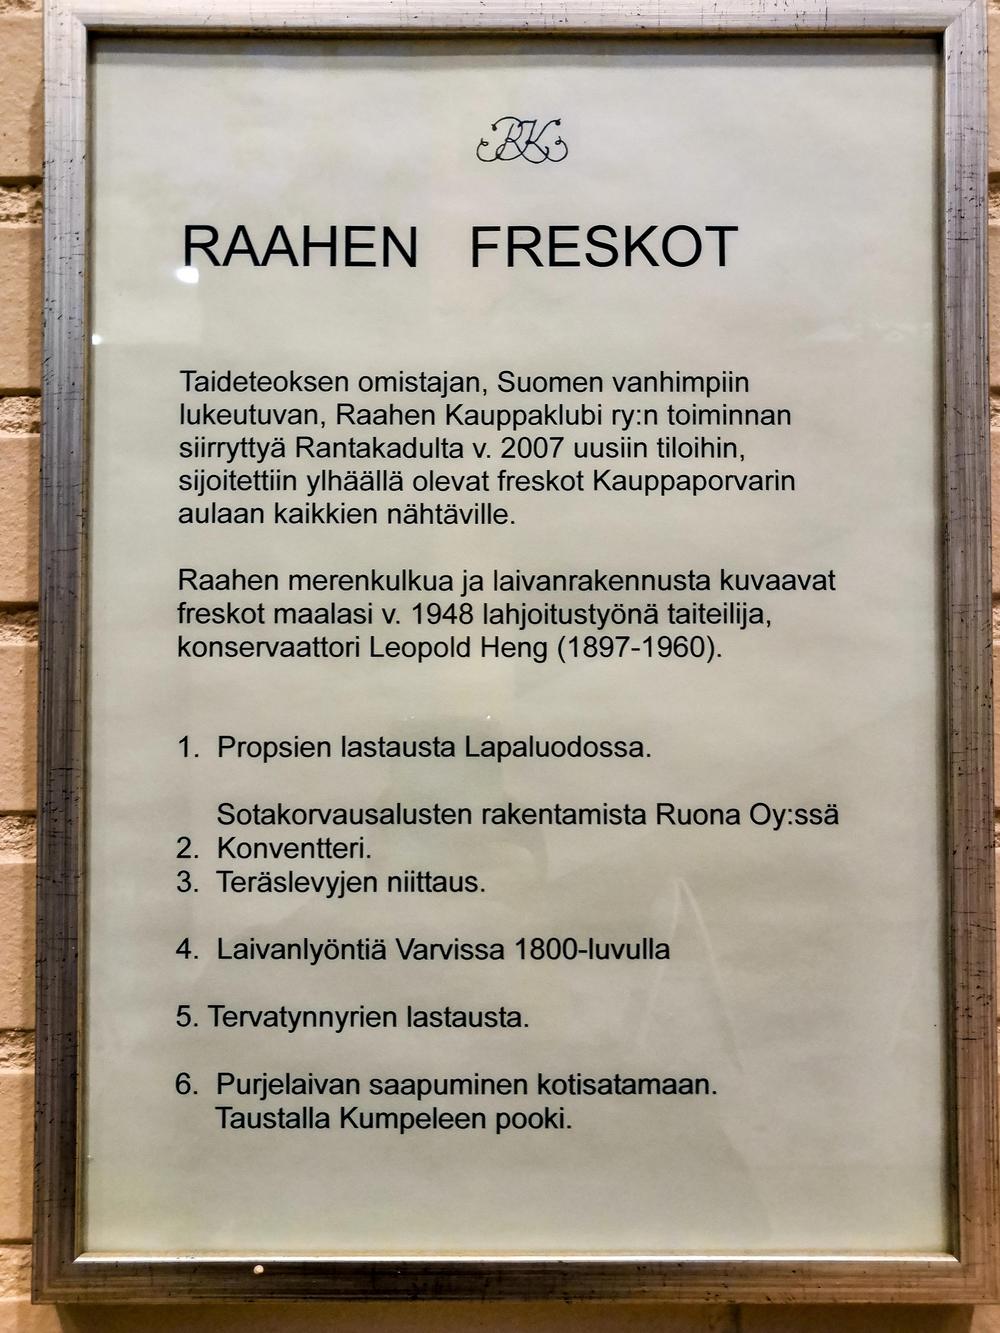 Raahen merenkulkua ja laivanrakennusta kuvaavat "freskot" maalasi taiteilija, konservaattori Leopold Heng (1897-1960) lahjoitustyönä Kauppaklubille 1948. Kauppaklubin siirryttyä Rantakadulta uusiin tiloihin, maalaukset asetettiin kaikkien nähtäville Kauppaporvarin seinälle. Kuvissa 1. Propsien lastausta Lapaluodossa  2. Sotakorvausalusten rakentamista Ruona Oy:ssä ( Konvertteri, Teräslevyjen niittausta) 3 Laivan lyöminen Varvissa 1800-luvulla 4. Tervatynnyrien lastausta 5. Purjelaivan saapuminen kotisatamaan.